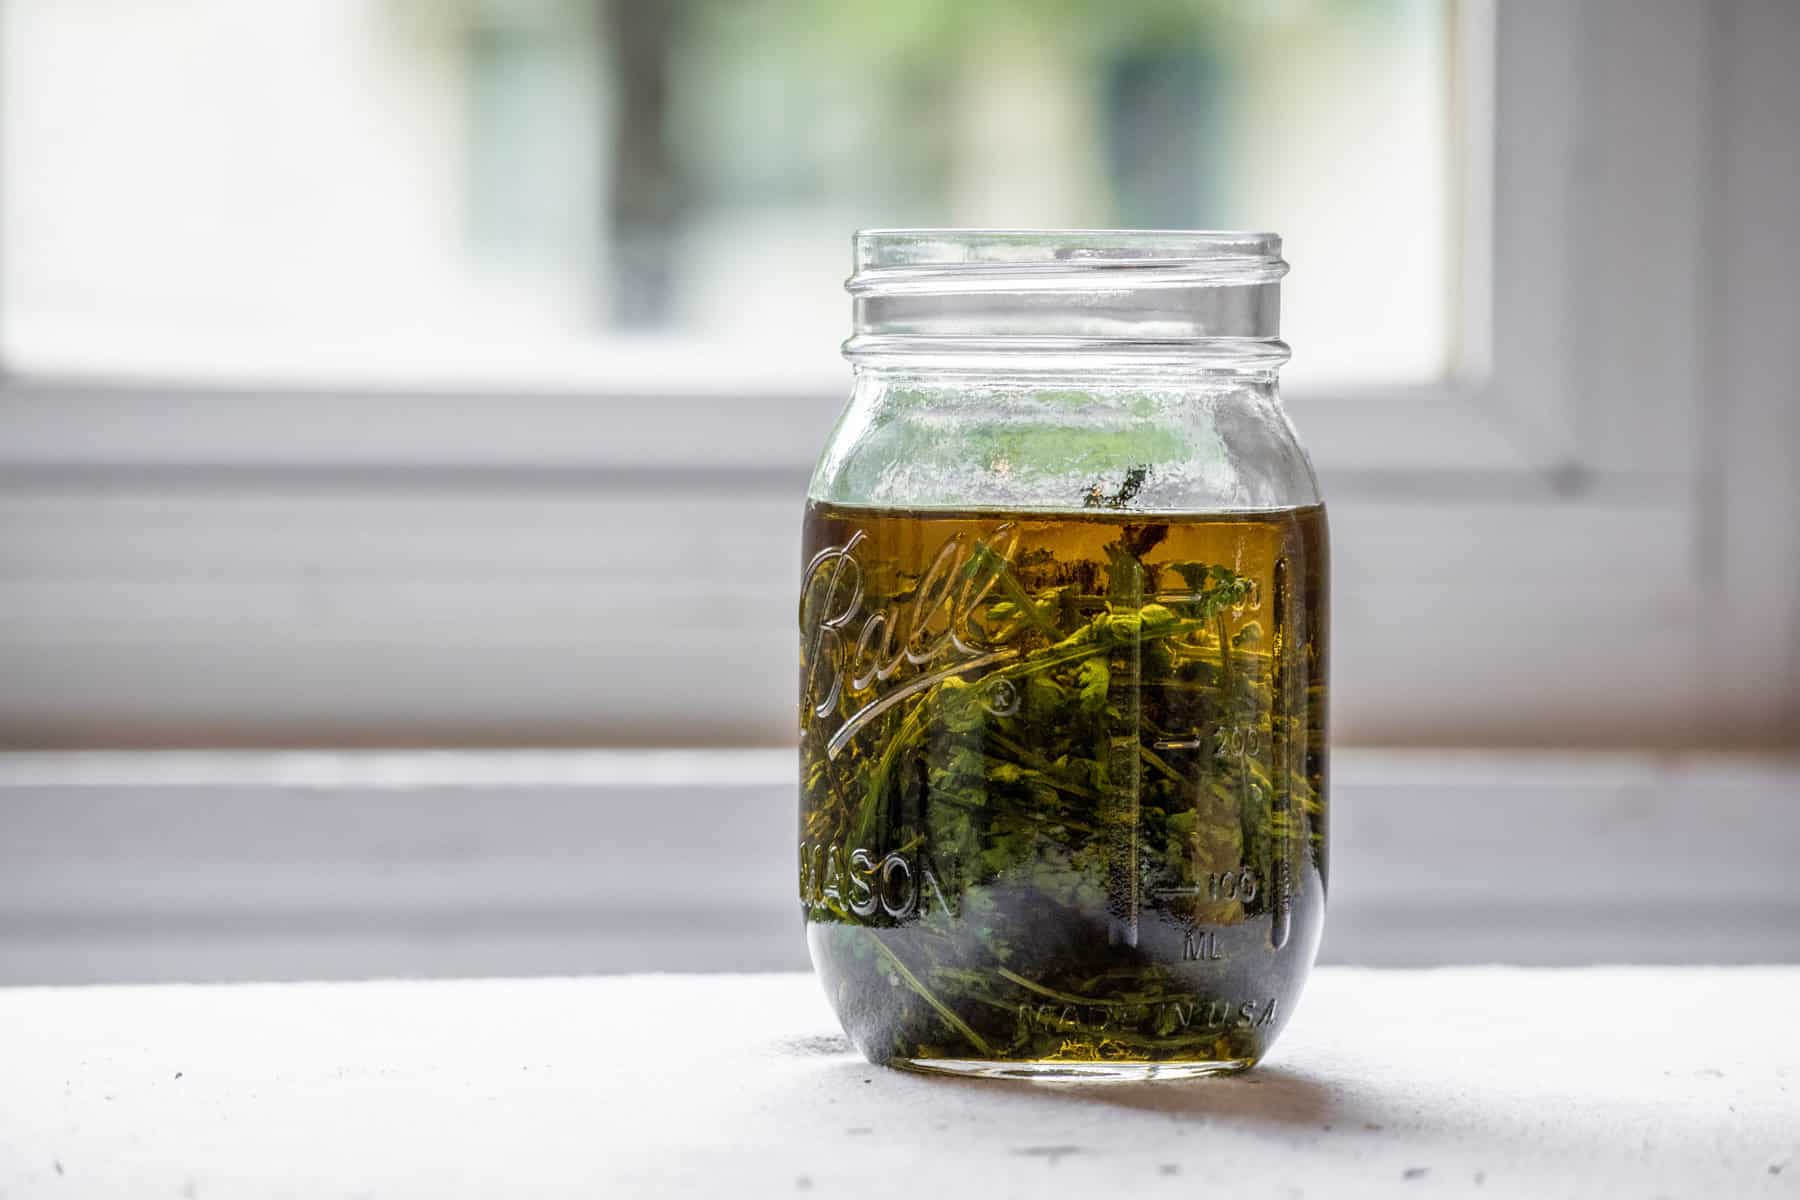 A jar of yarrow oil infusing near a window